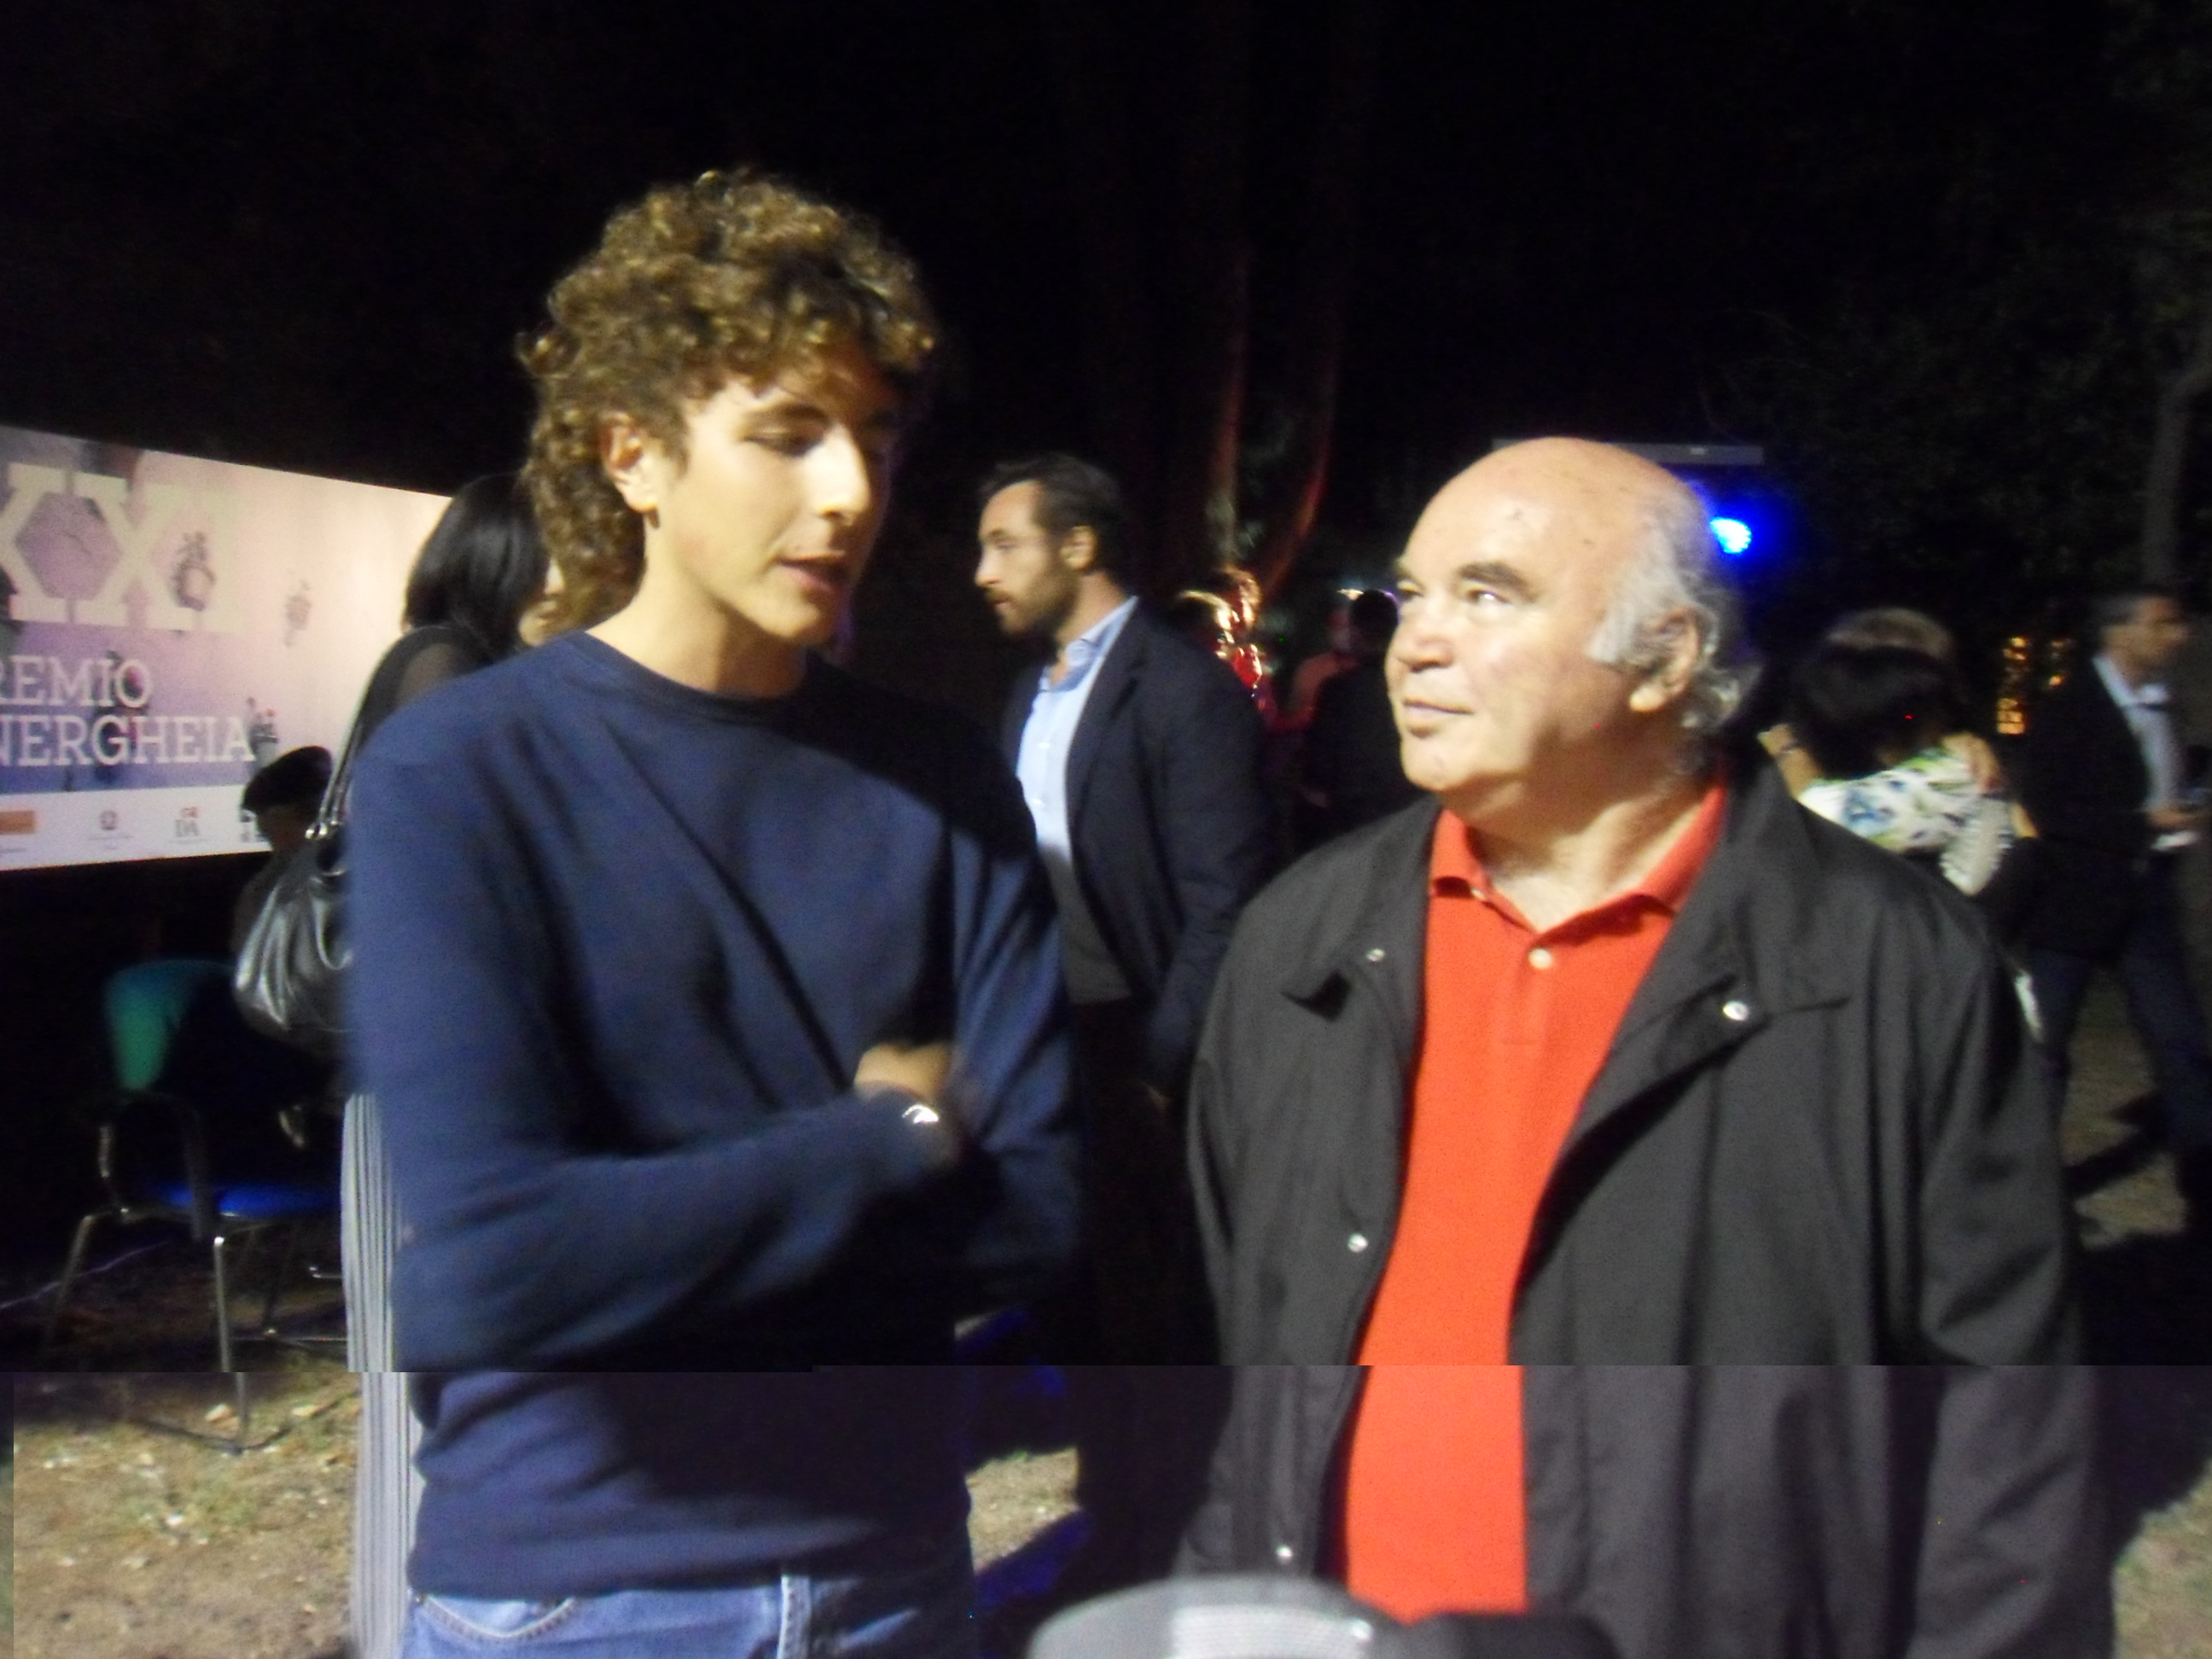 Premio Energheia 2015. Intervista a Jacopo Ricci, autore del miglior racconto da sceneggiare.